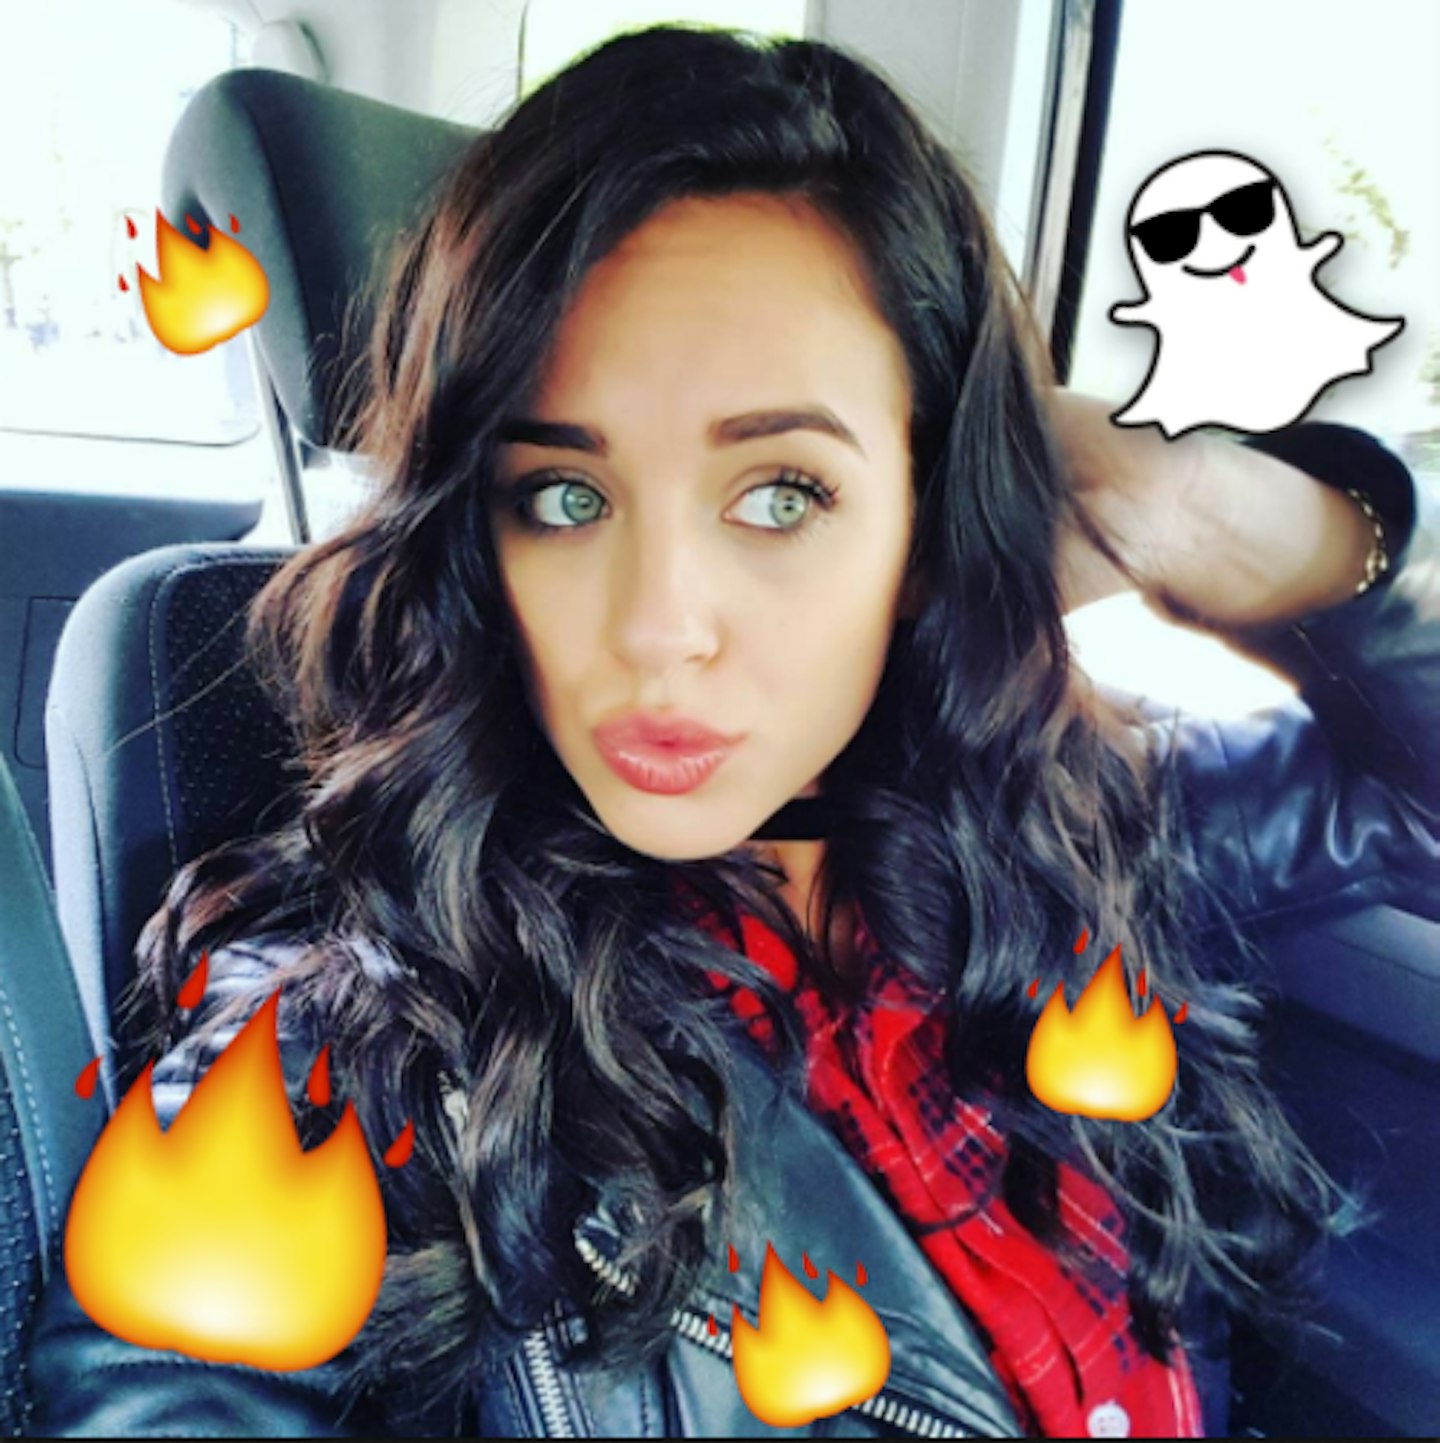 Georgia May Foote Snapchat